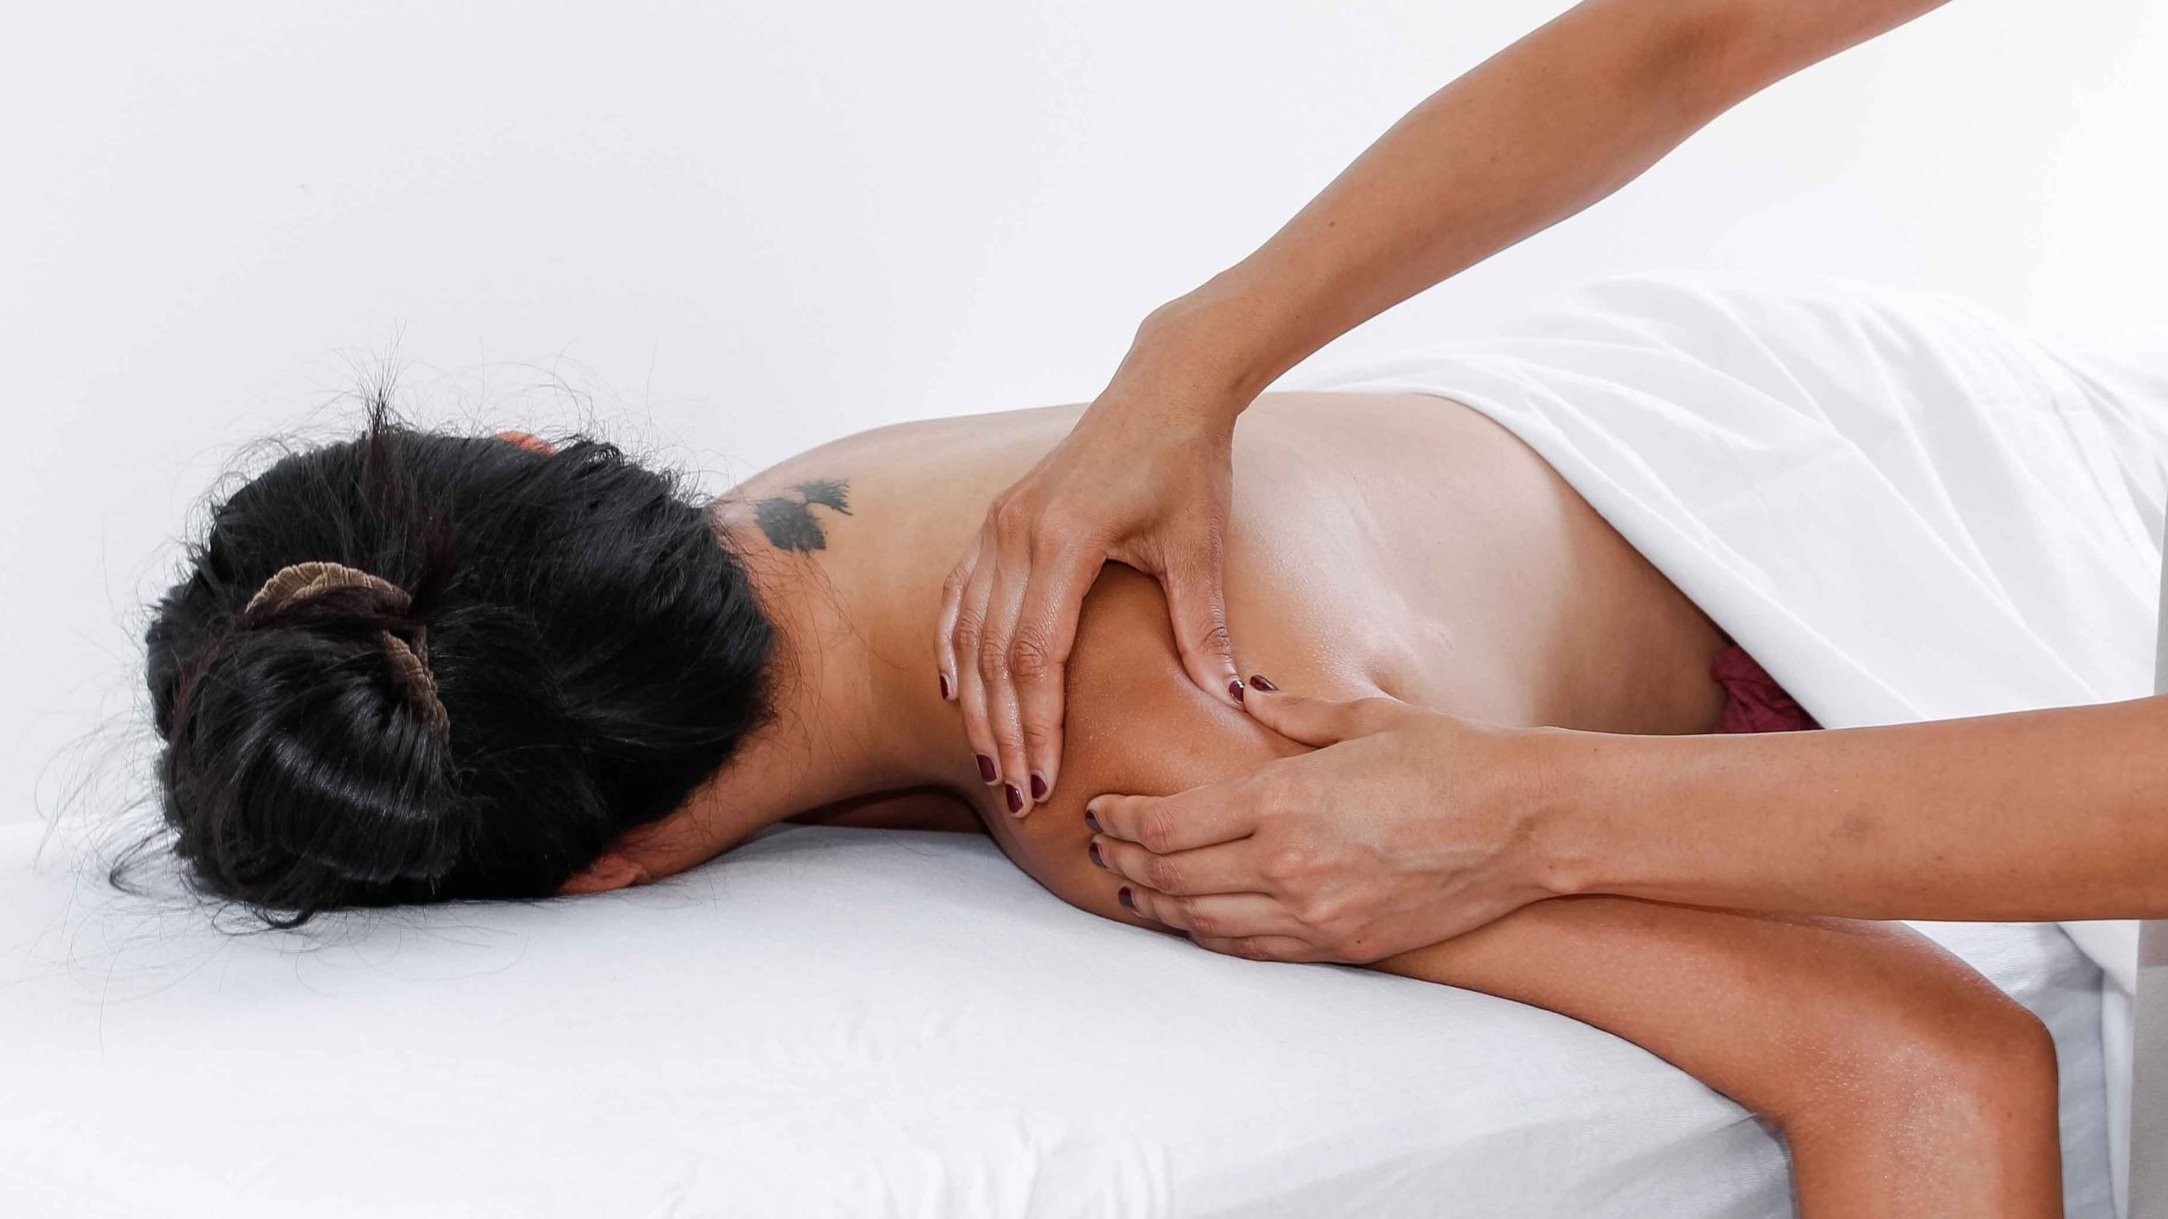 Back, Neck & Shoulder Massage  Natural Living Spa & Wellness Centre